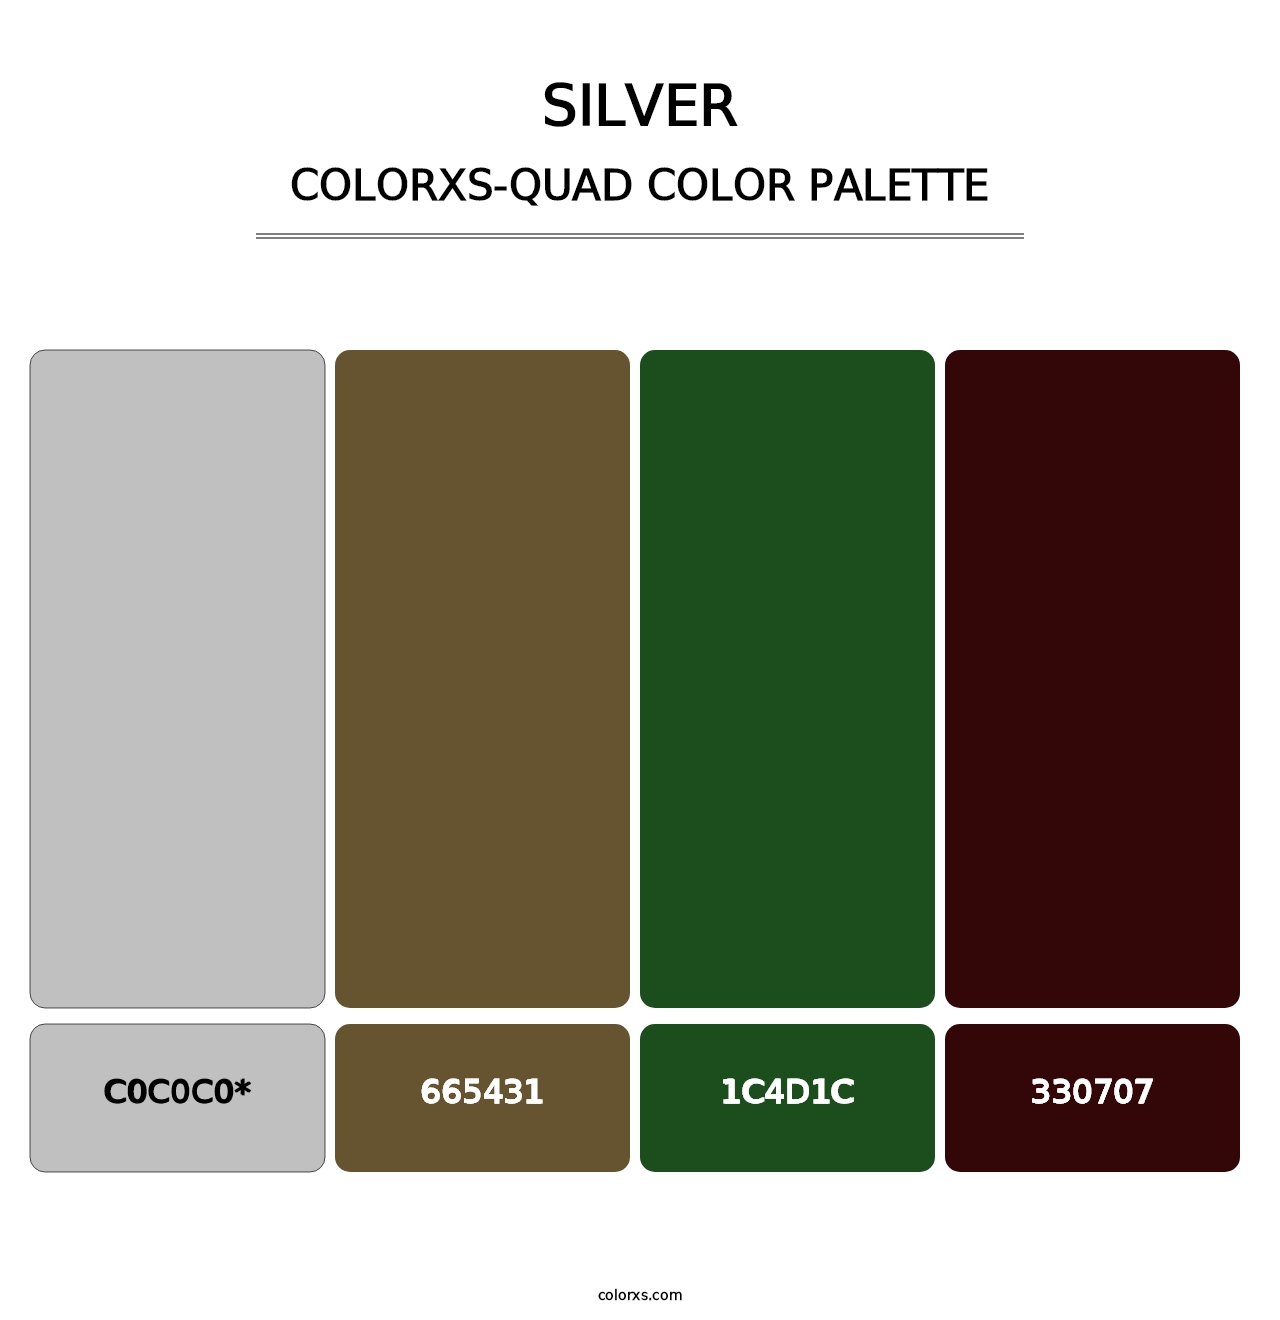 Silver - Colorxs Quad Palette